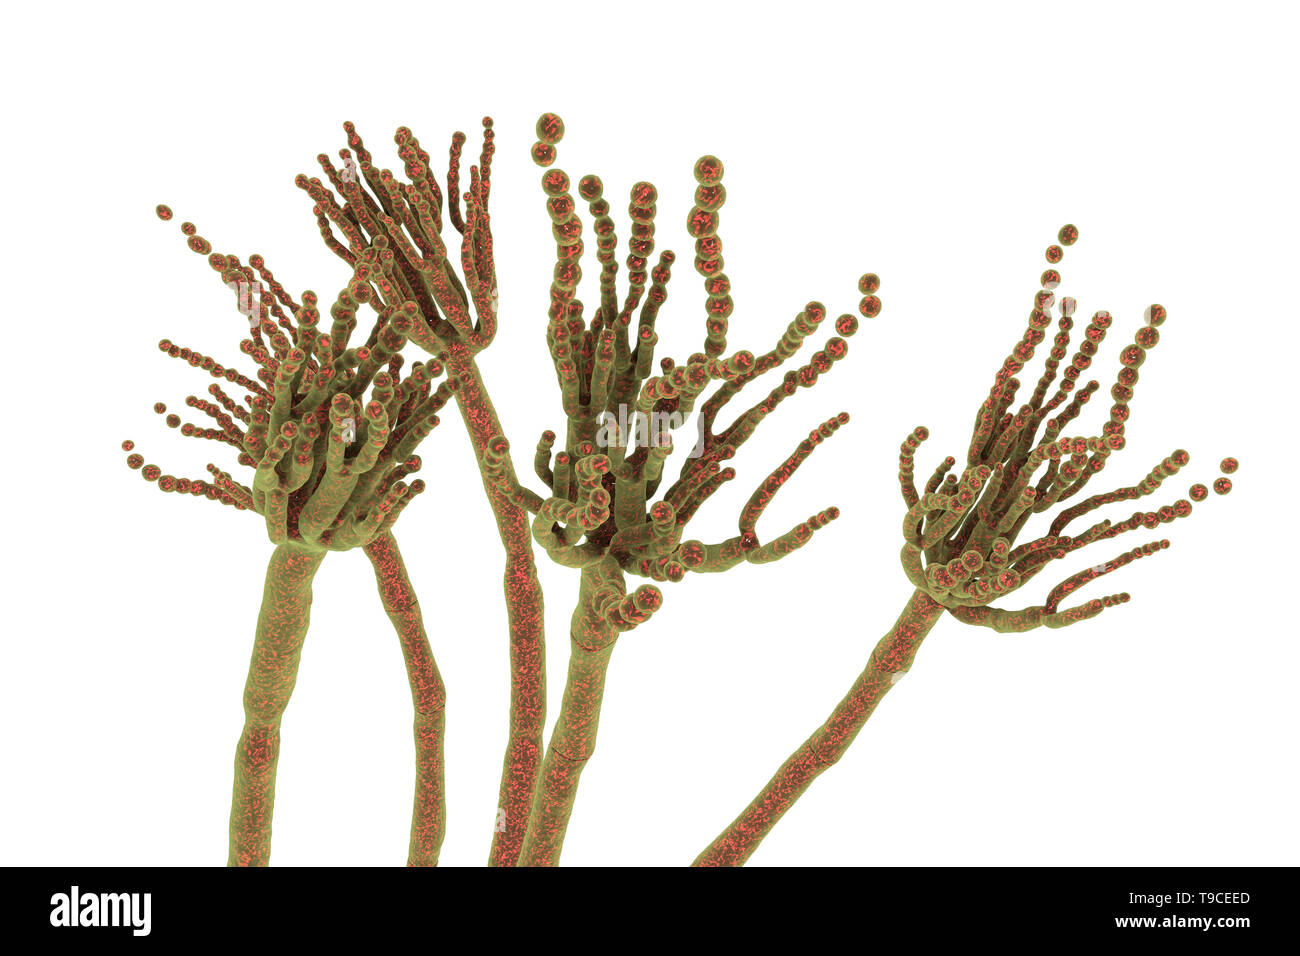 Penicillium roqueforti fungus, illustration Stock Photo